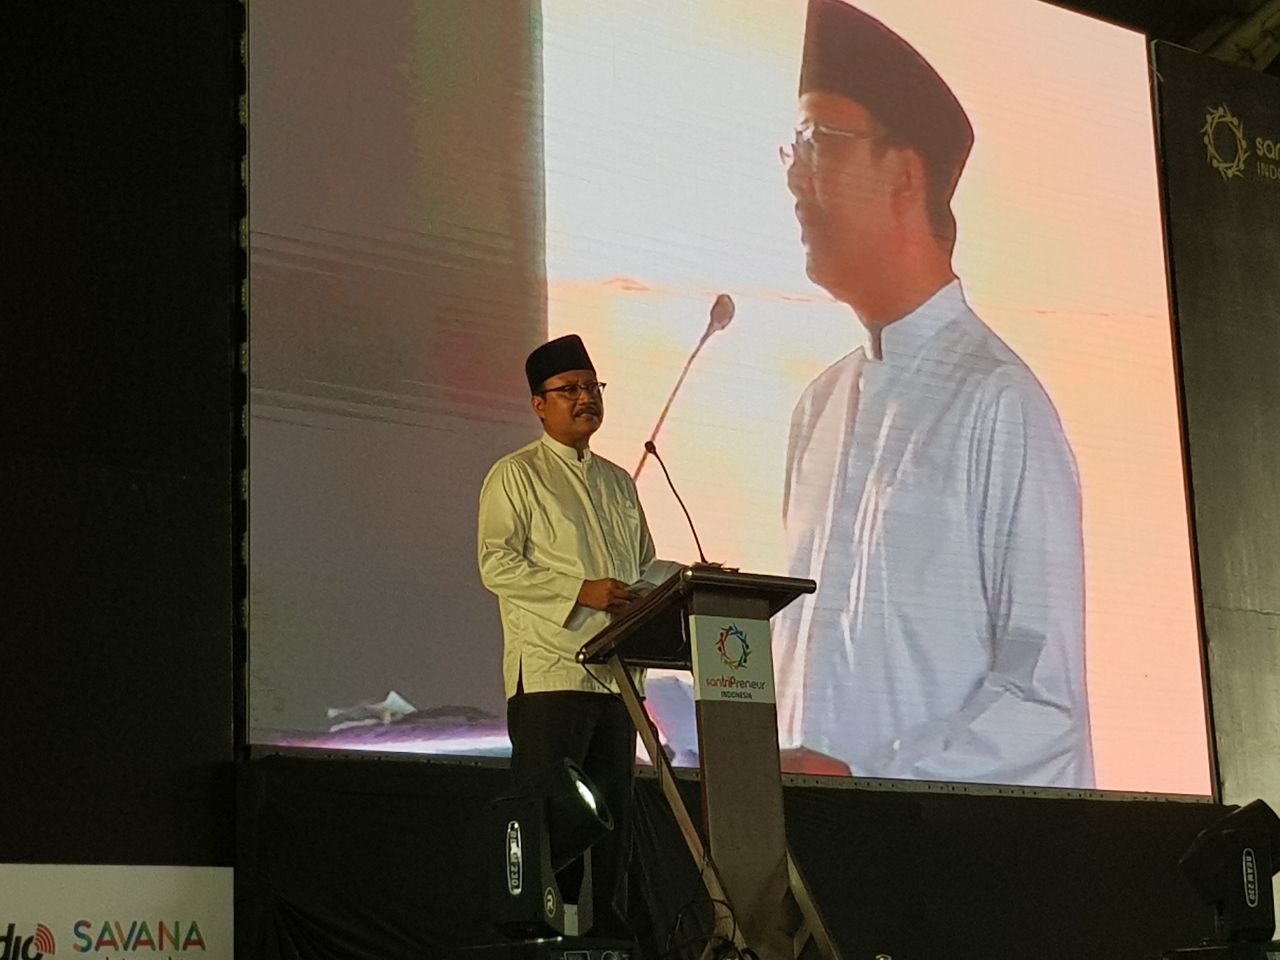 Wagub Jatim Saifullah Yusuf (Gus Ipul) saat menghadiri Santri Preneur Award 2017 di JX Internasional, Surabaya, Sabtu (25/11)